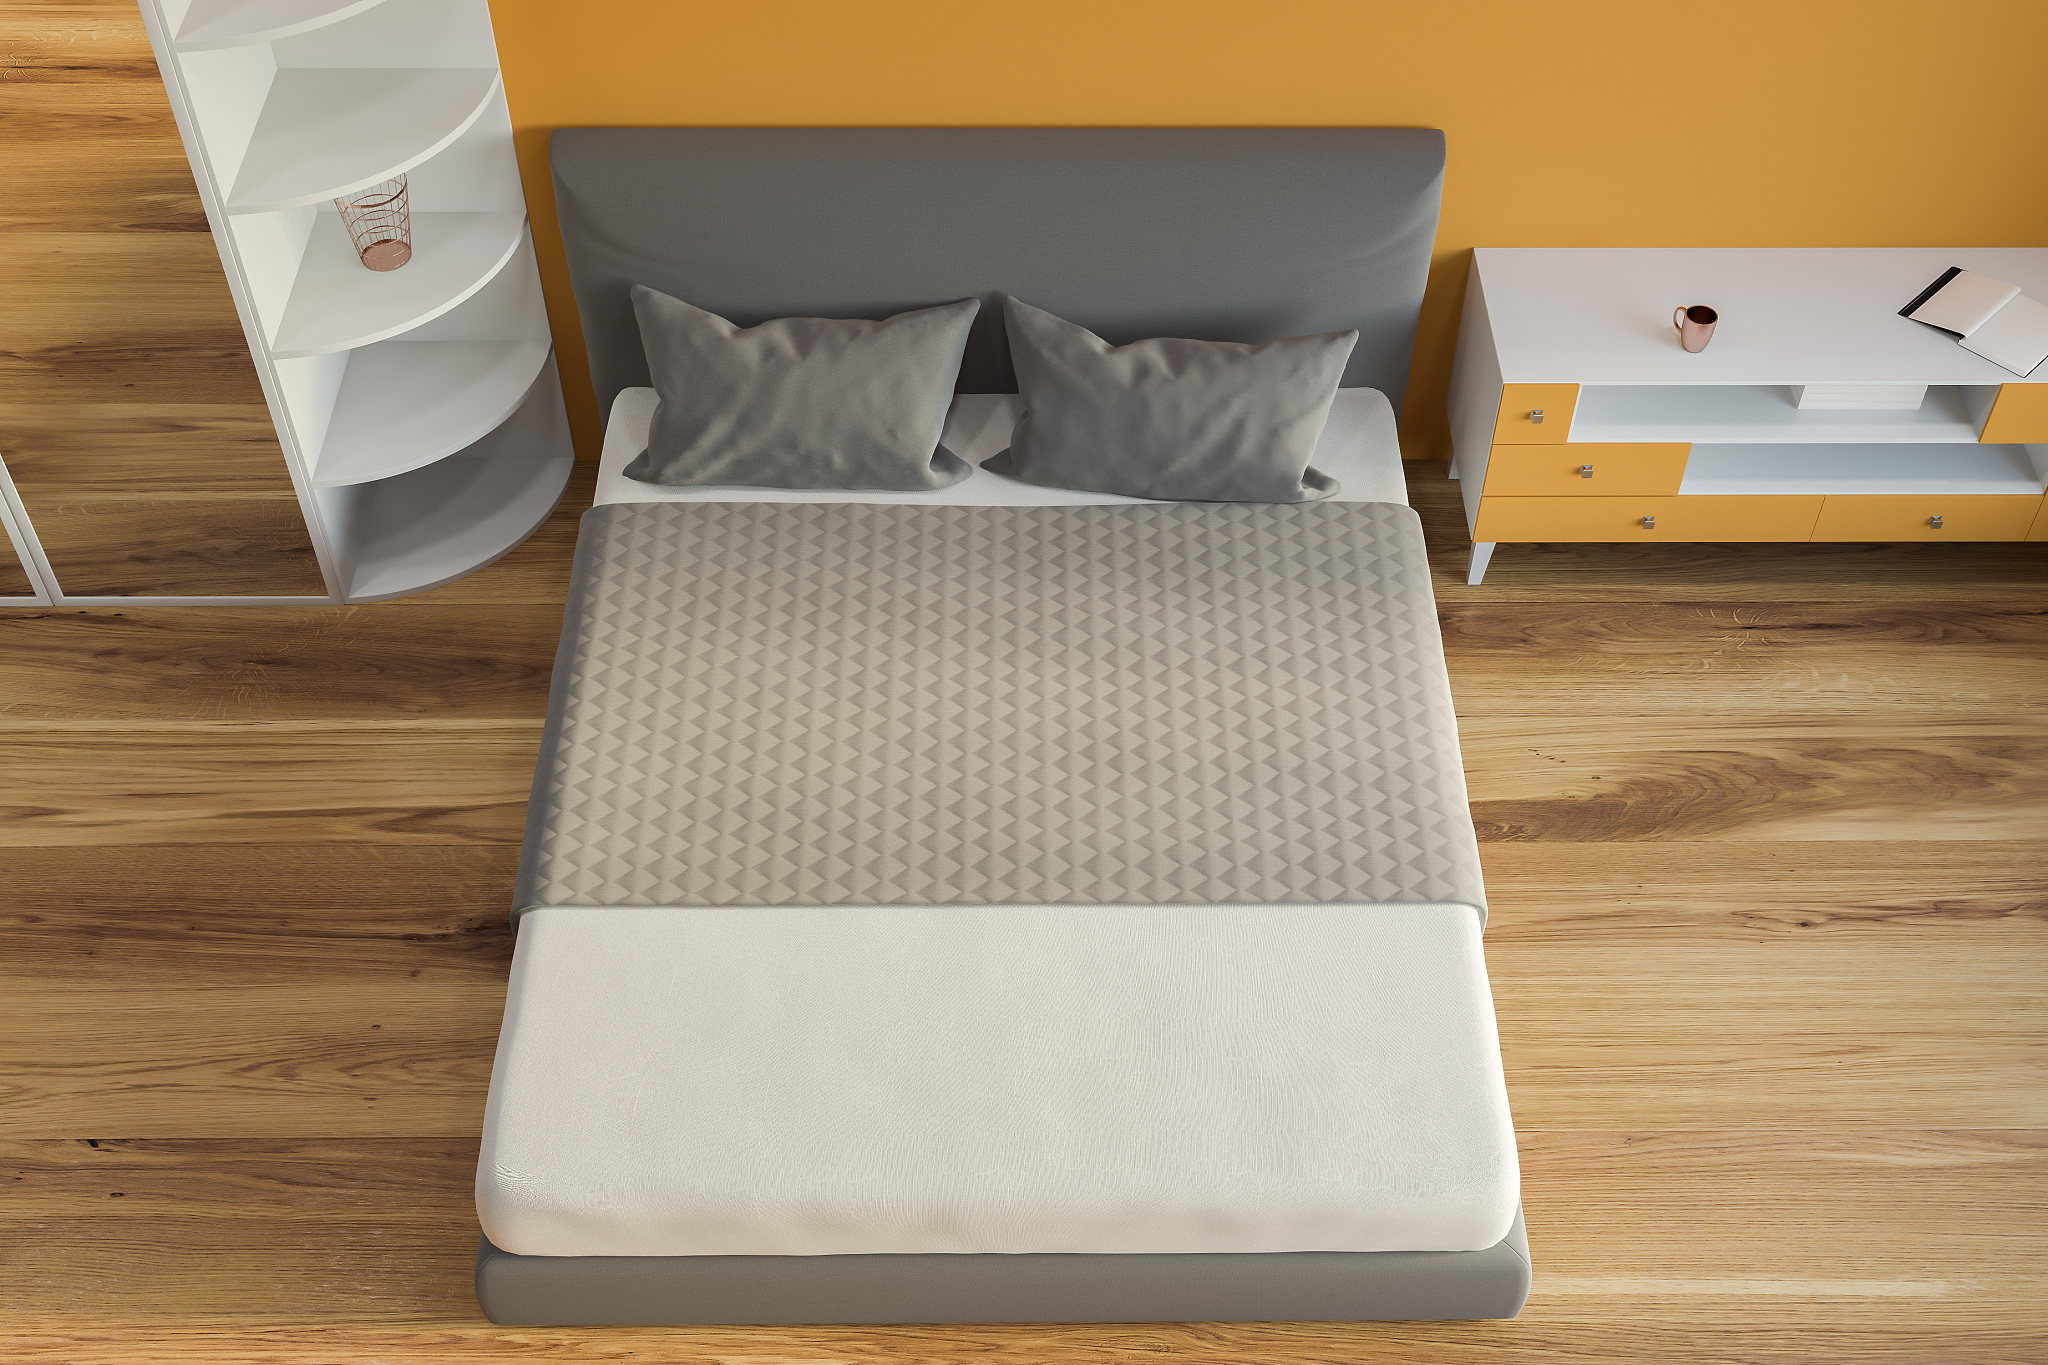 乳胶床垫与电热毯搭配:安全舒适的温暖之选